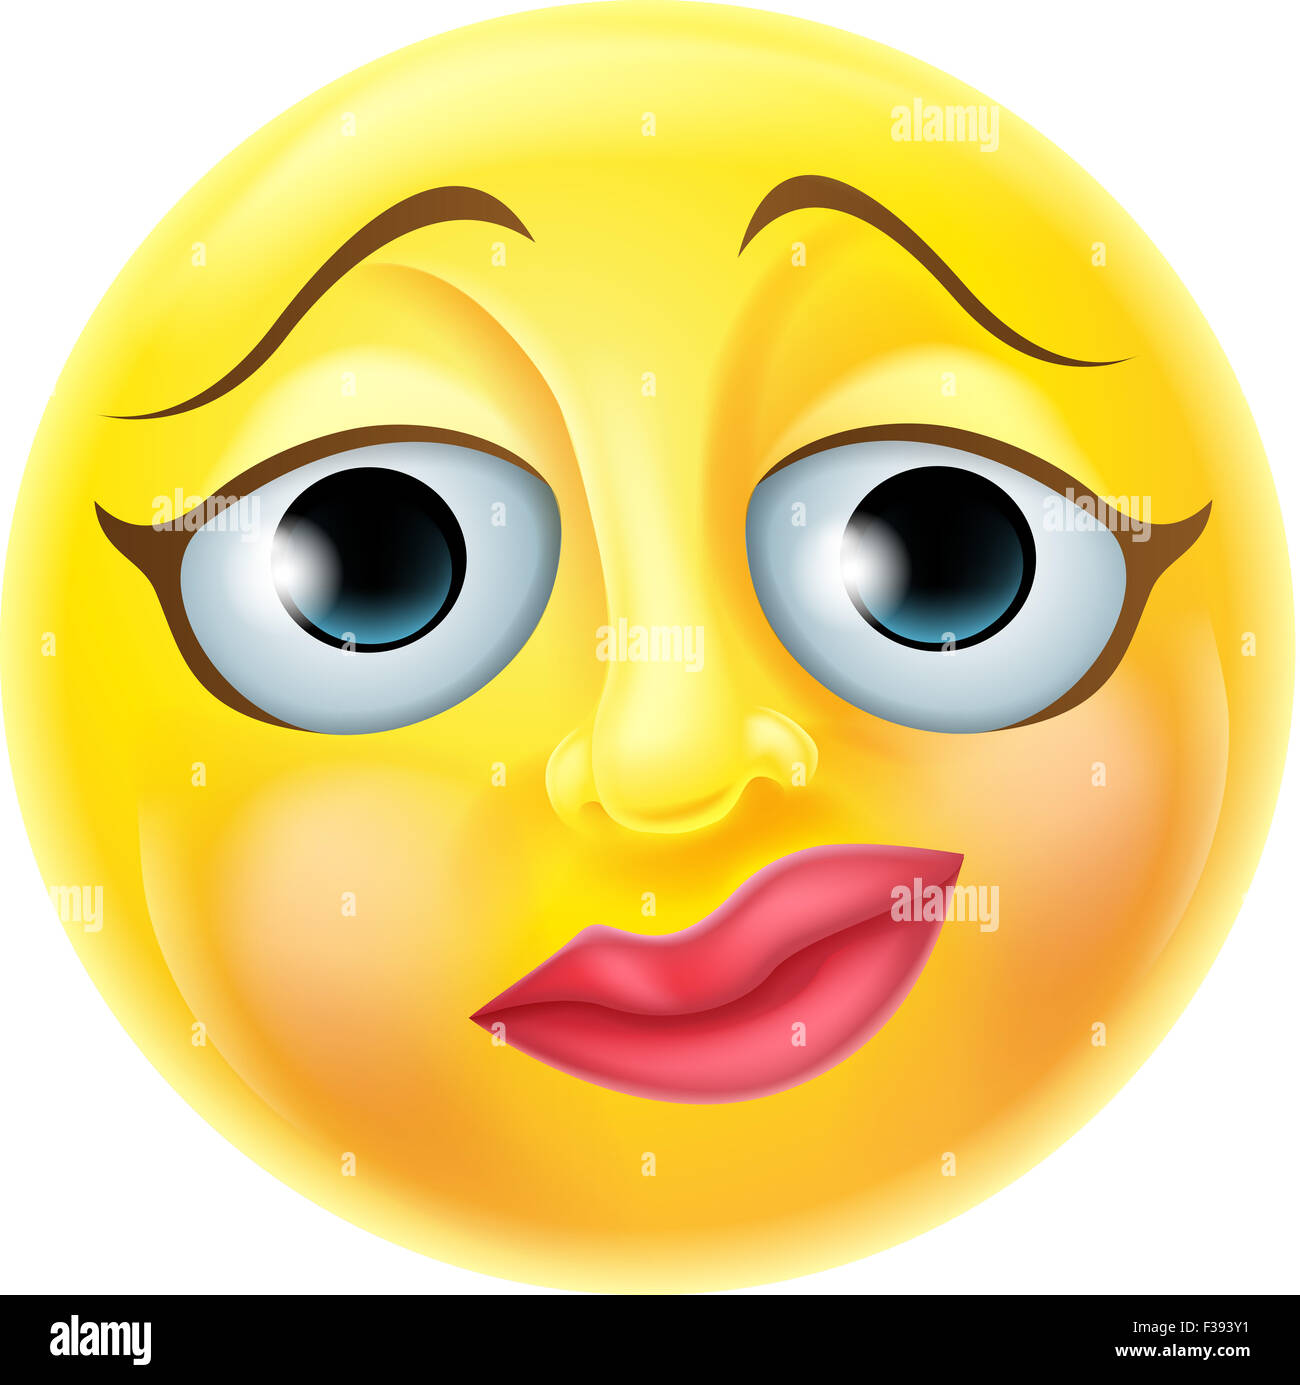 Ein vervous Emoji Emoticon Smiley Gesicht Charakter Stockfoto